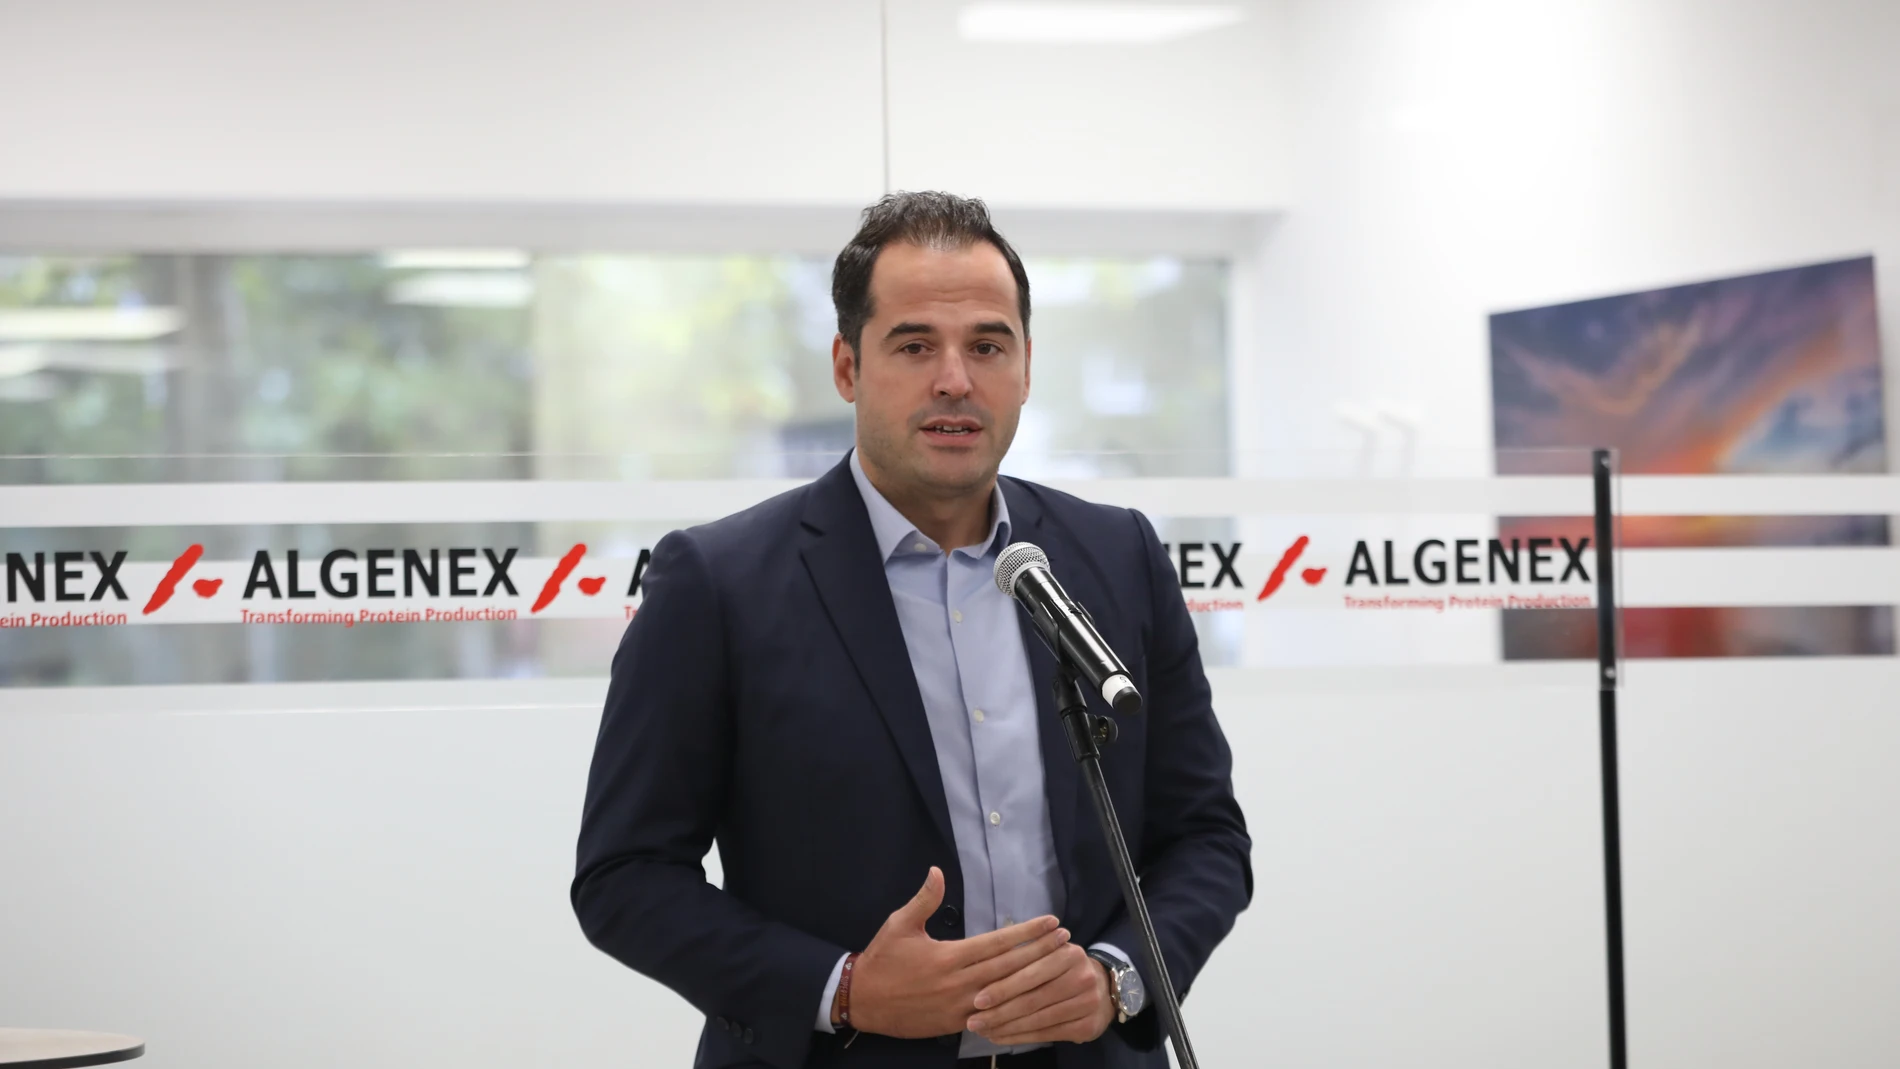 El vicepresidente de la Comunidad de Madrid, Ignacio Aguado, interviene durante la visita a las instalaciones de una nueva factoría de la empresa ALGENEX dedicada a la producción de vacunas